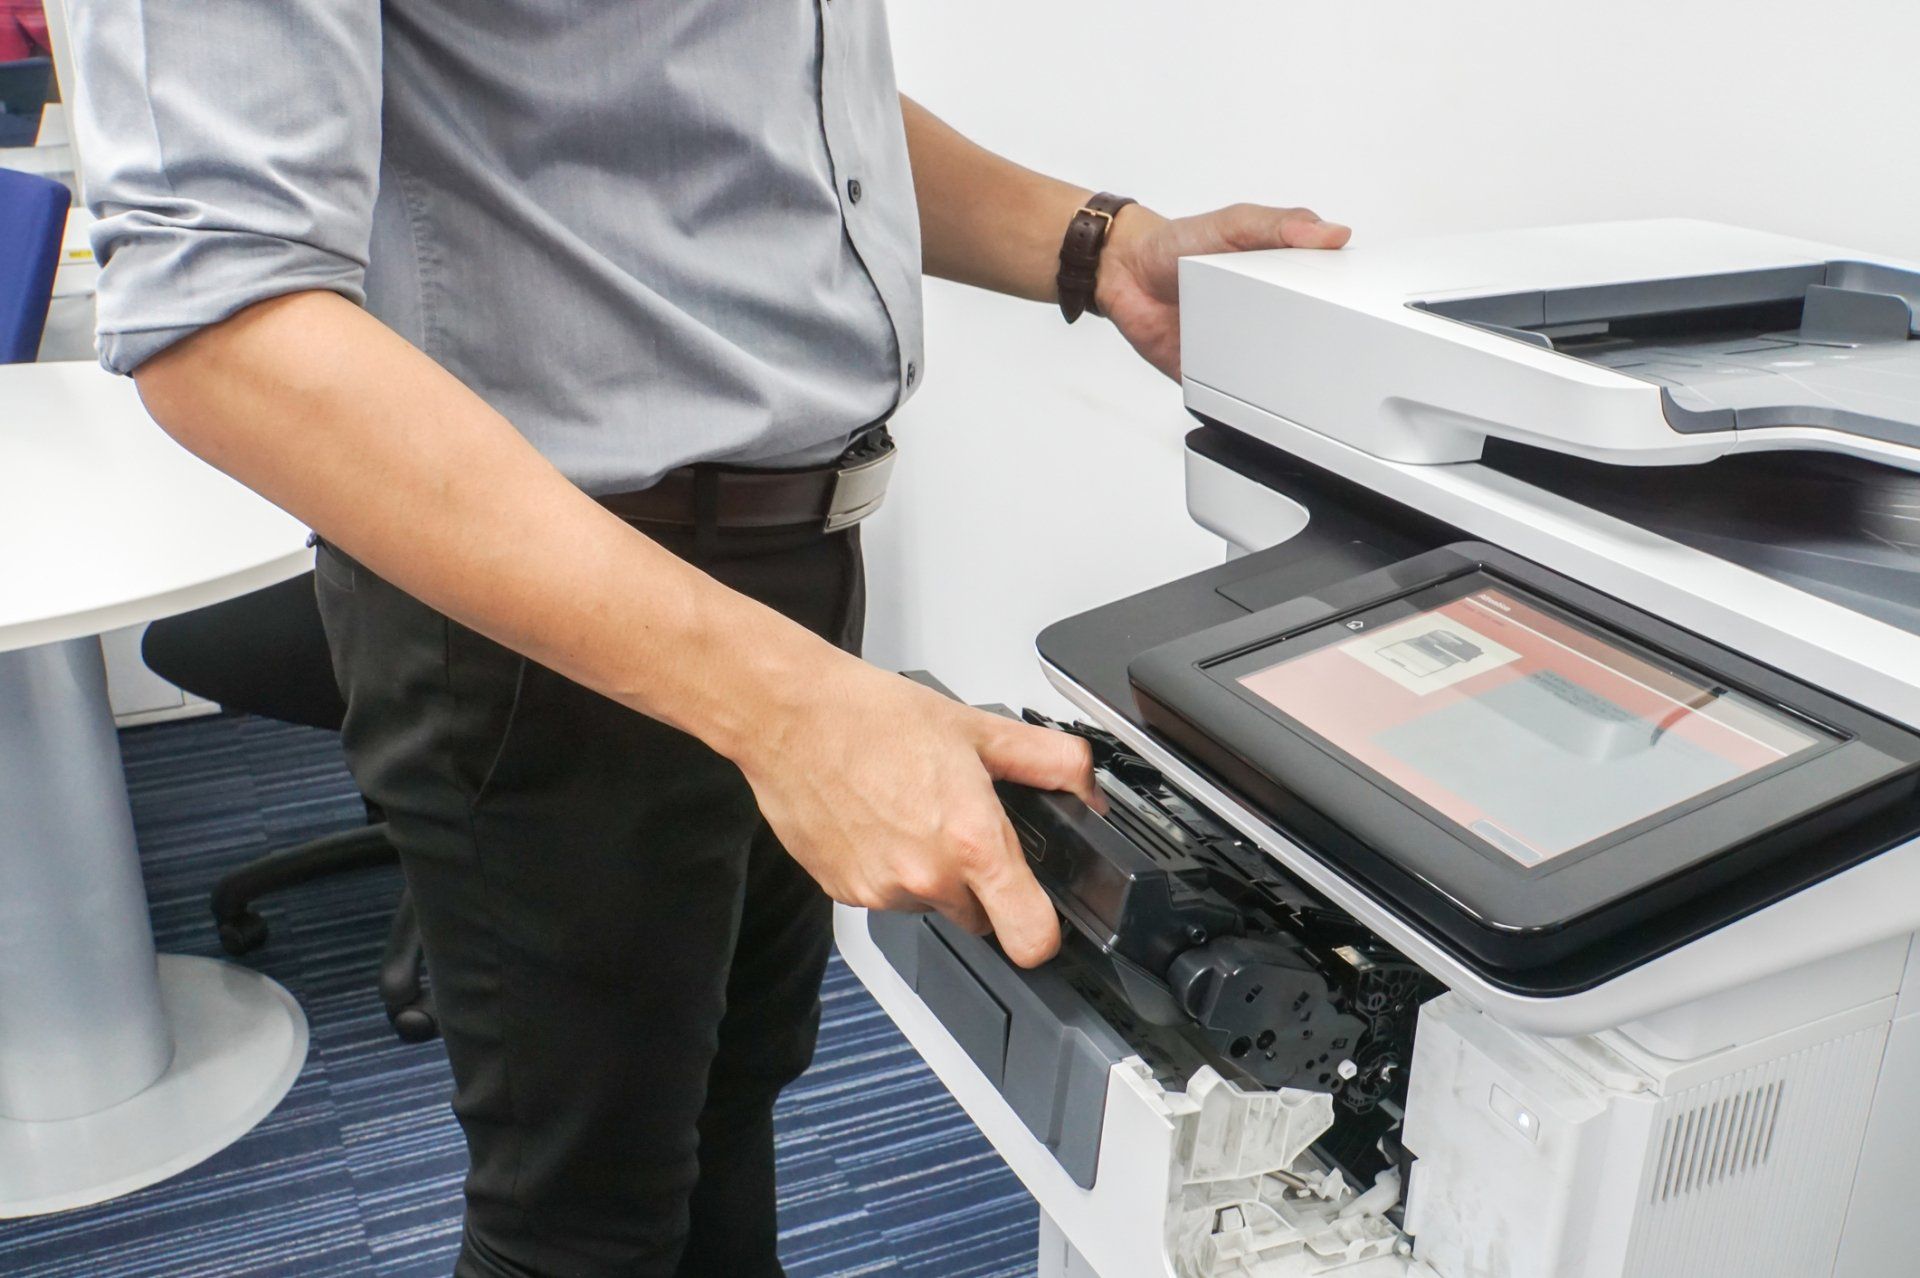 Testing your multifunction printer